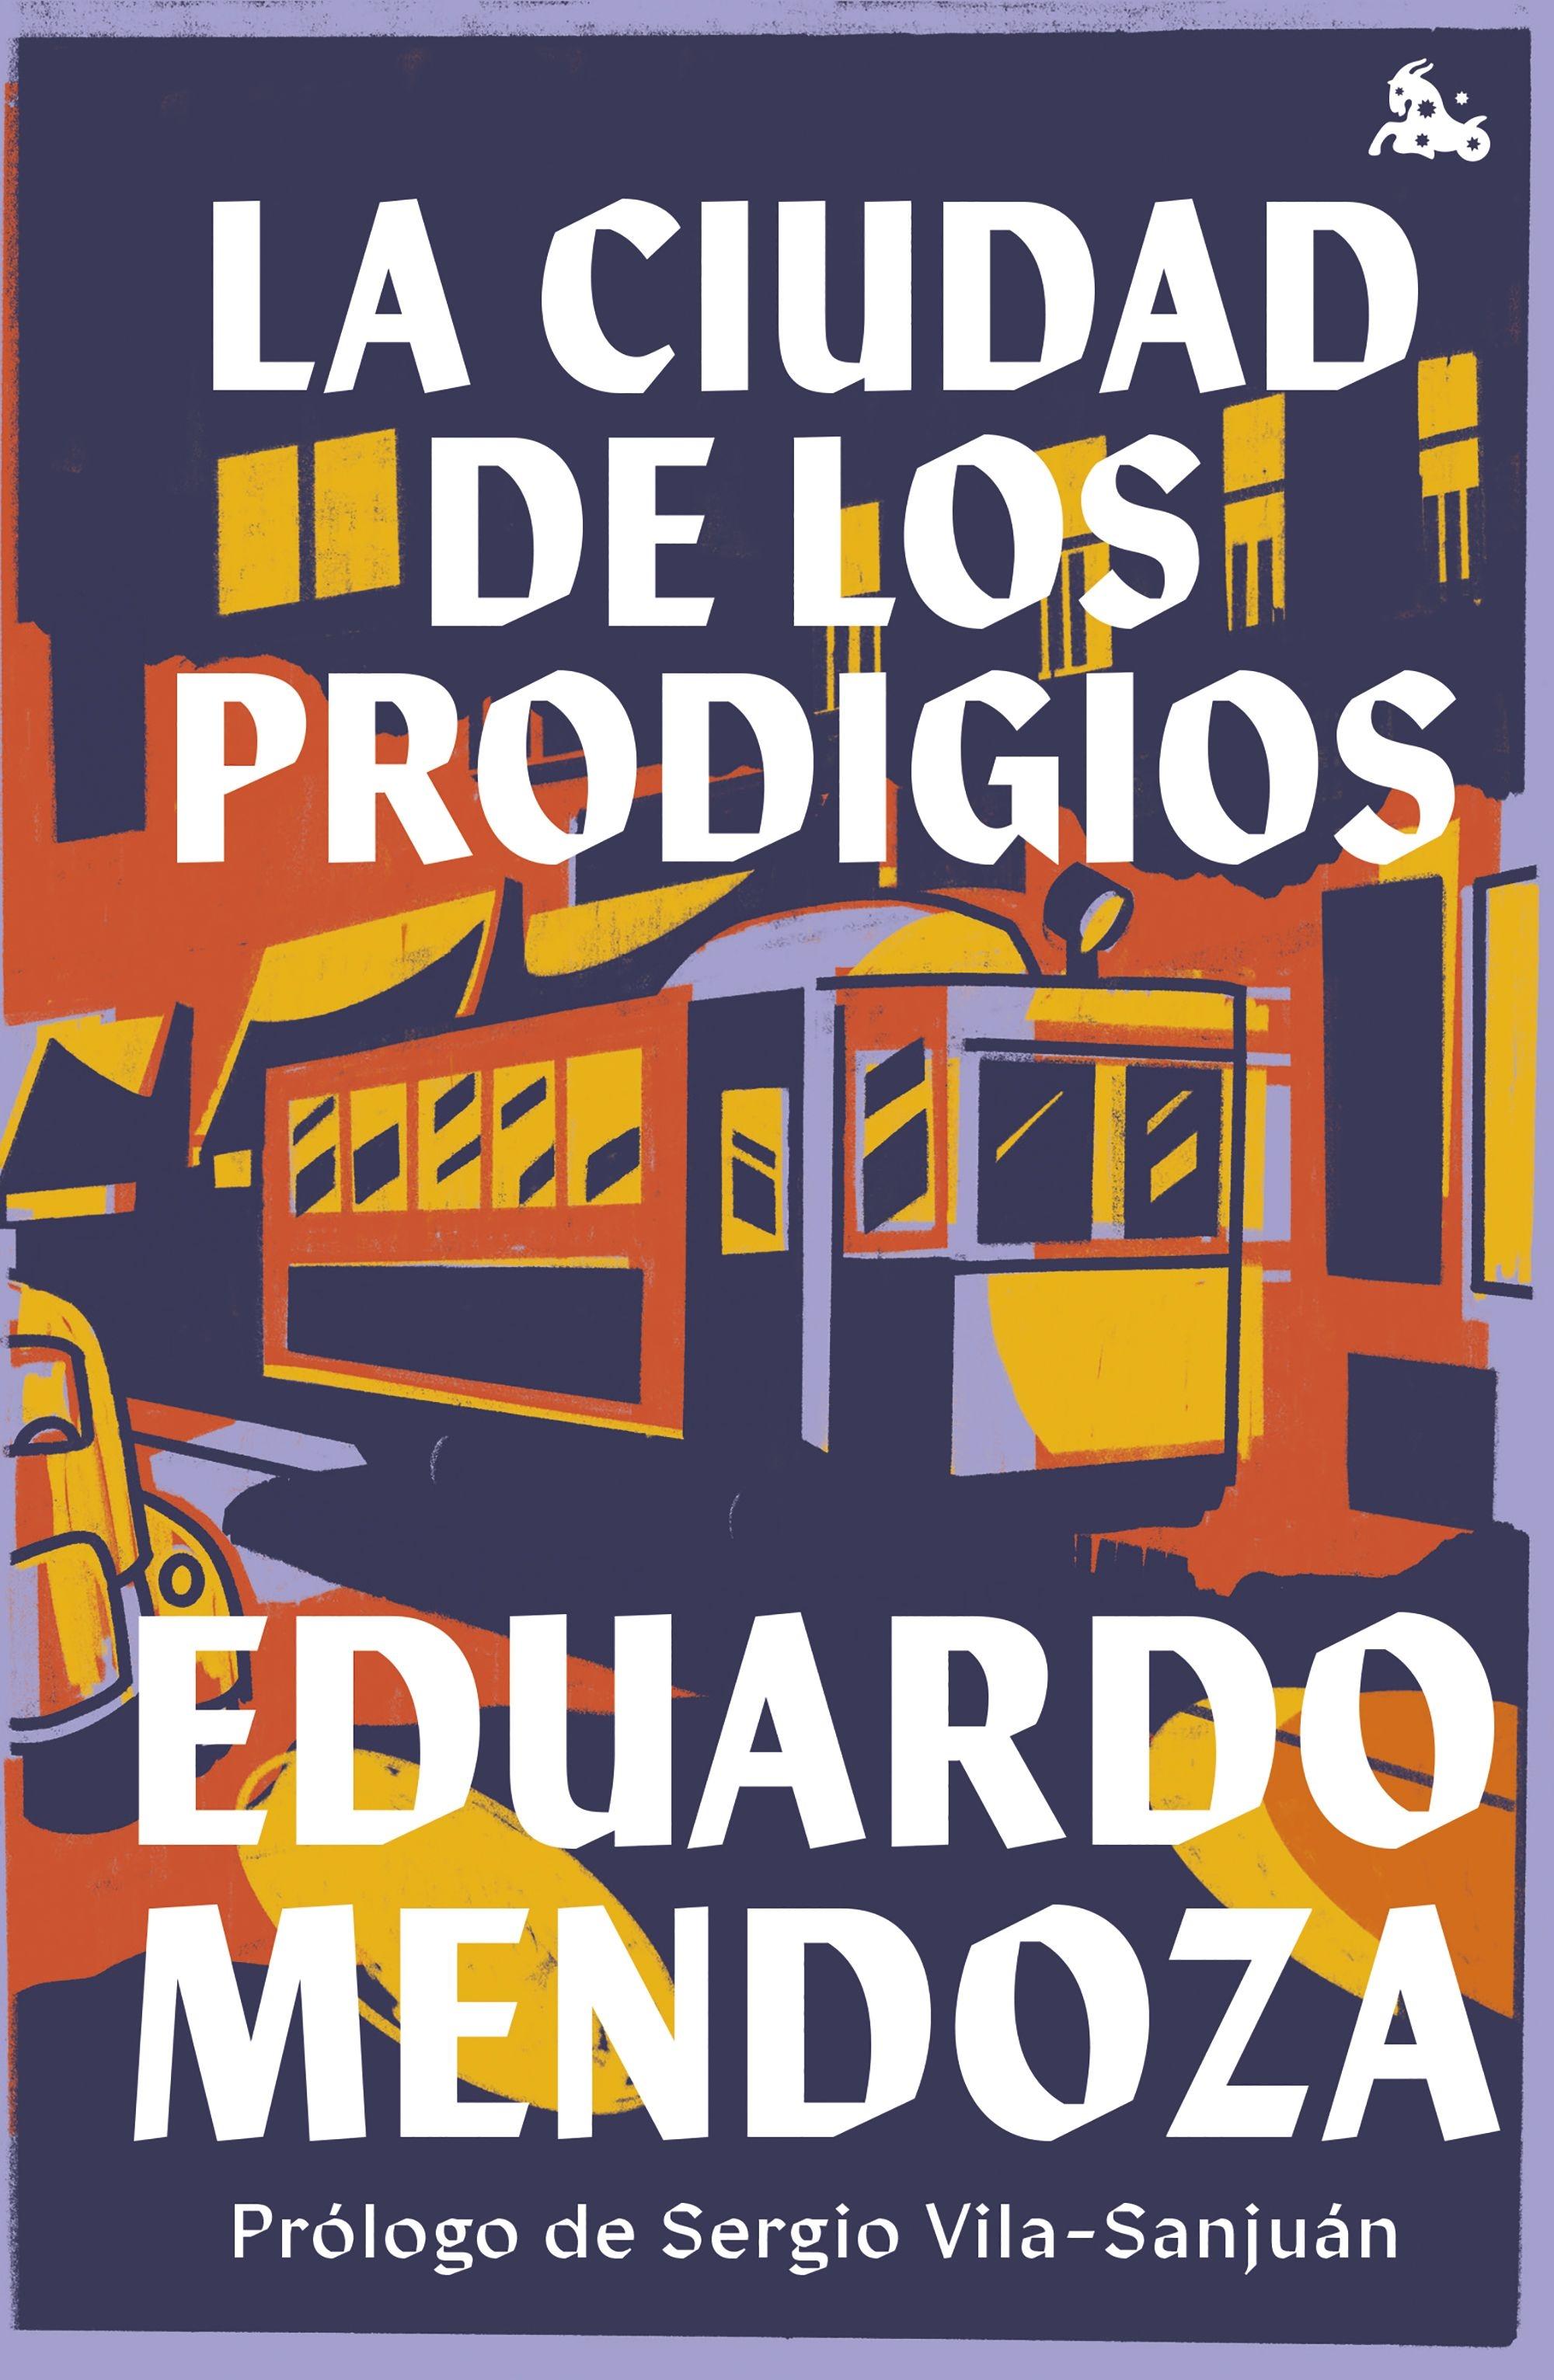 La Ciudad de los Prodigios "Prólogo de Sergio Vila-Sanjuán"